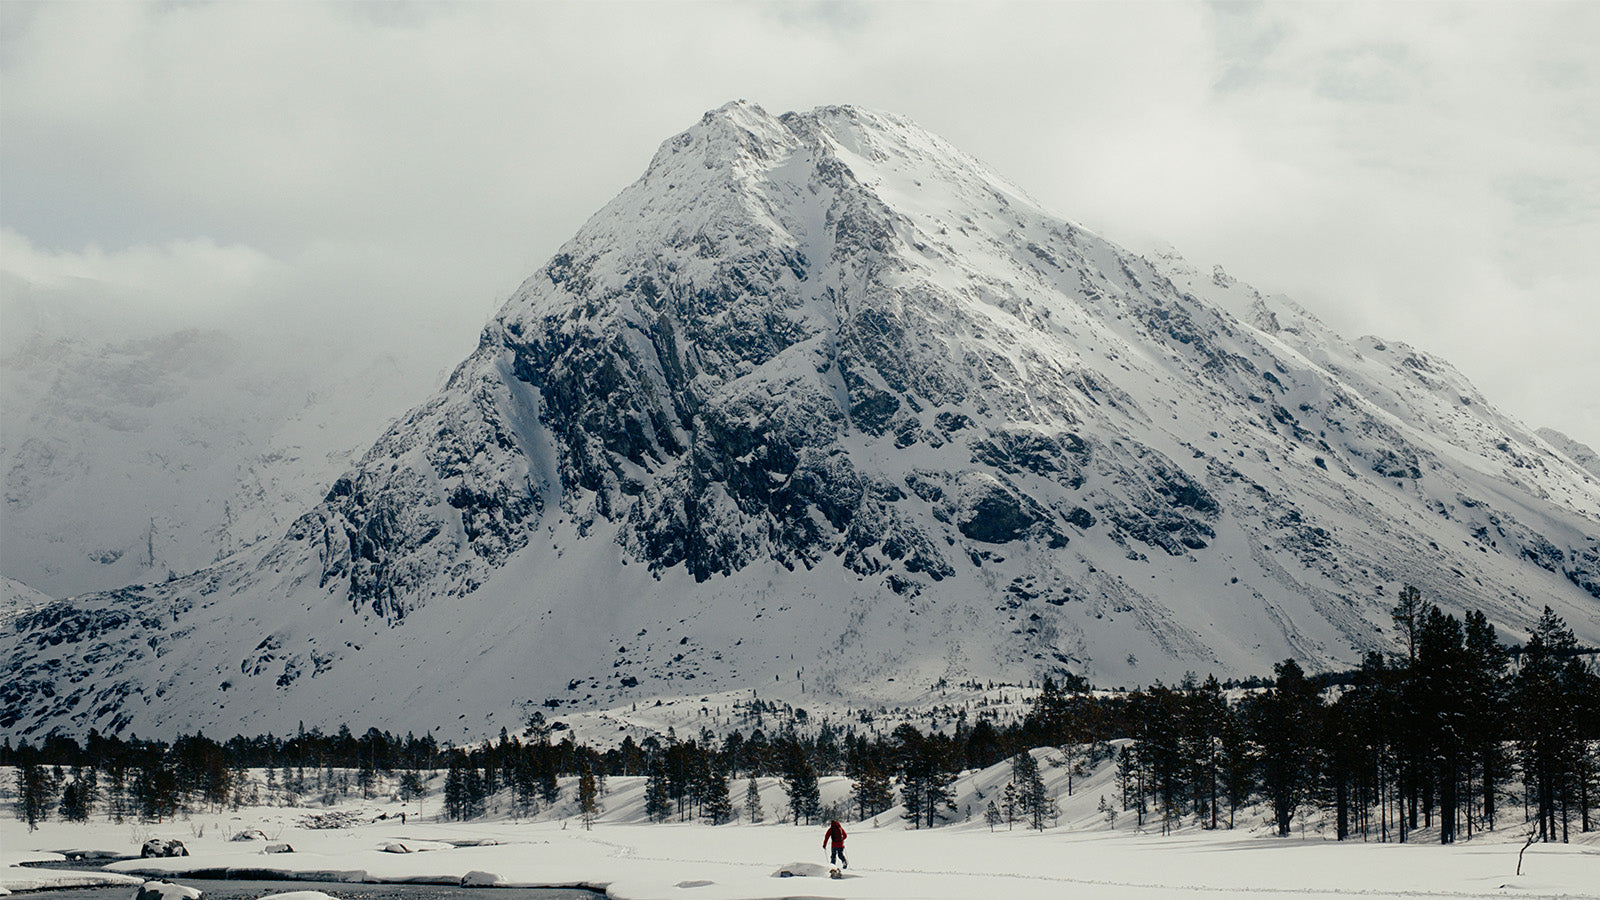 splitboarder in front of norwegian peak